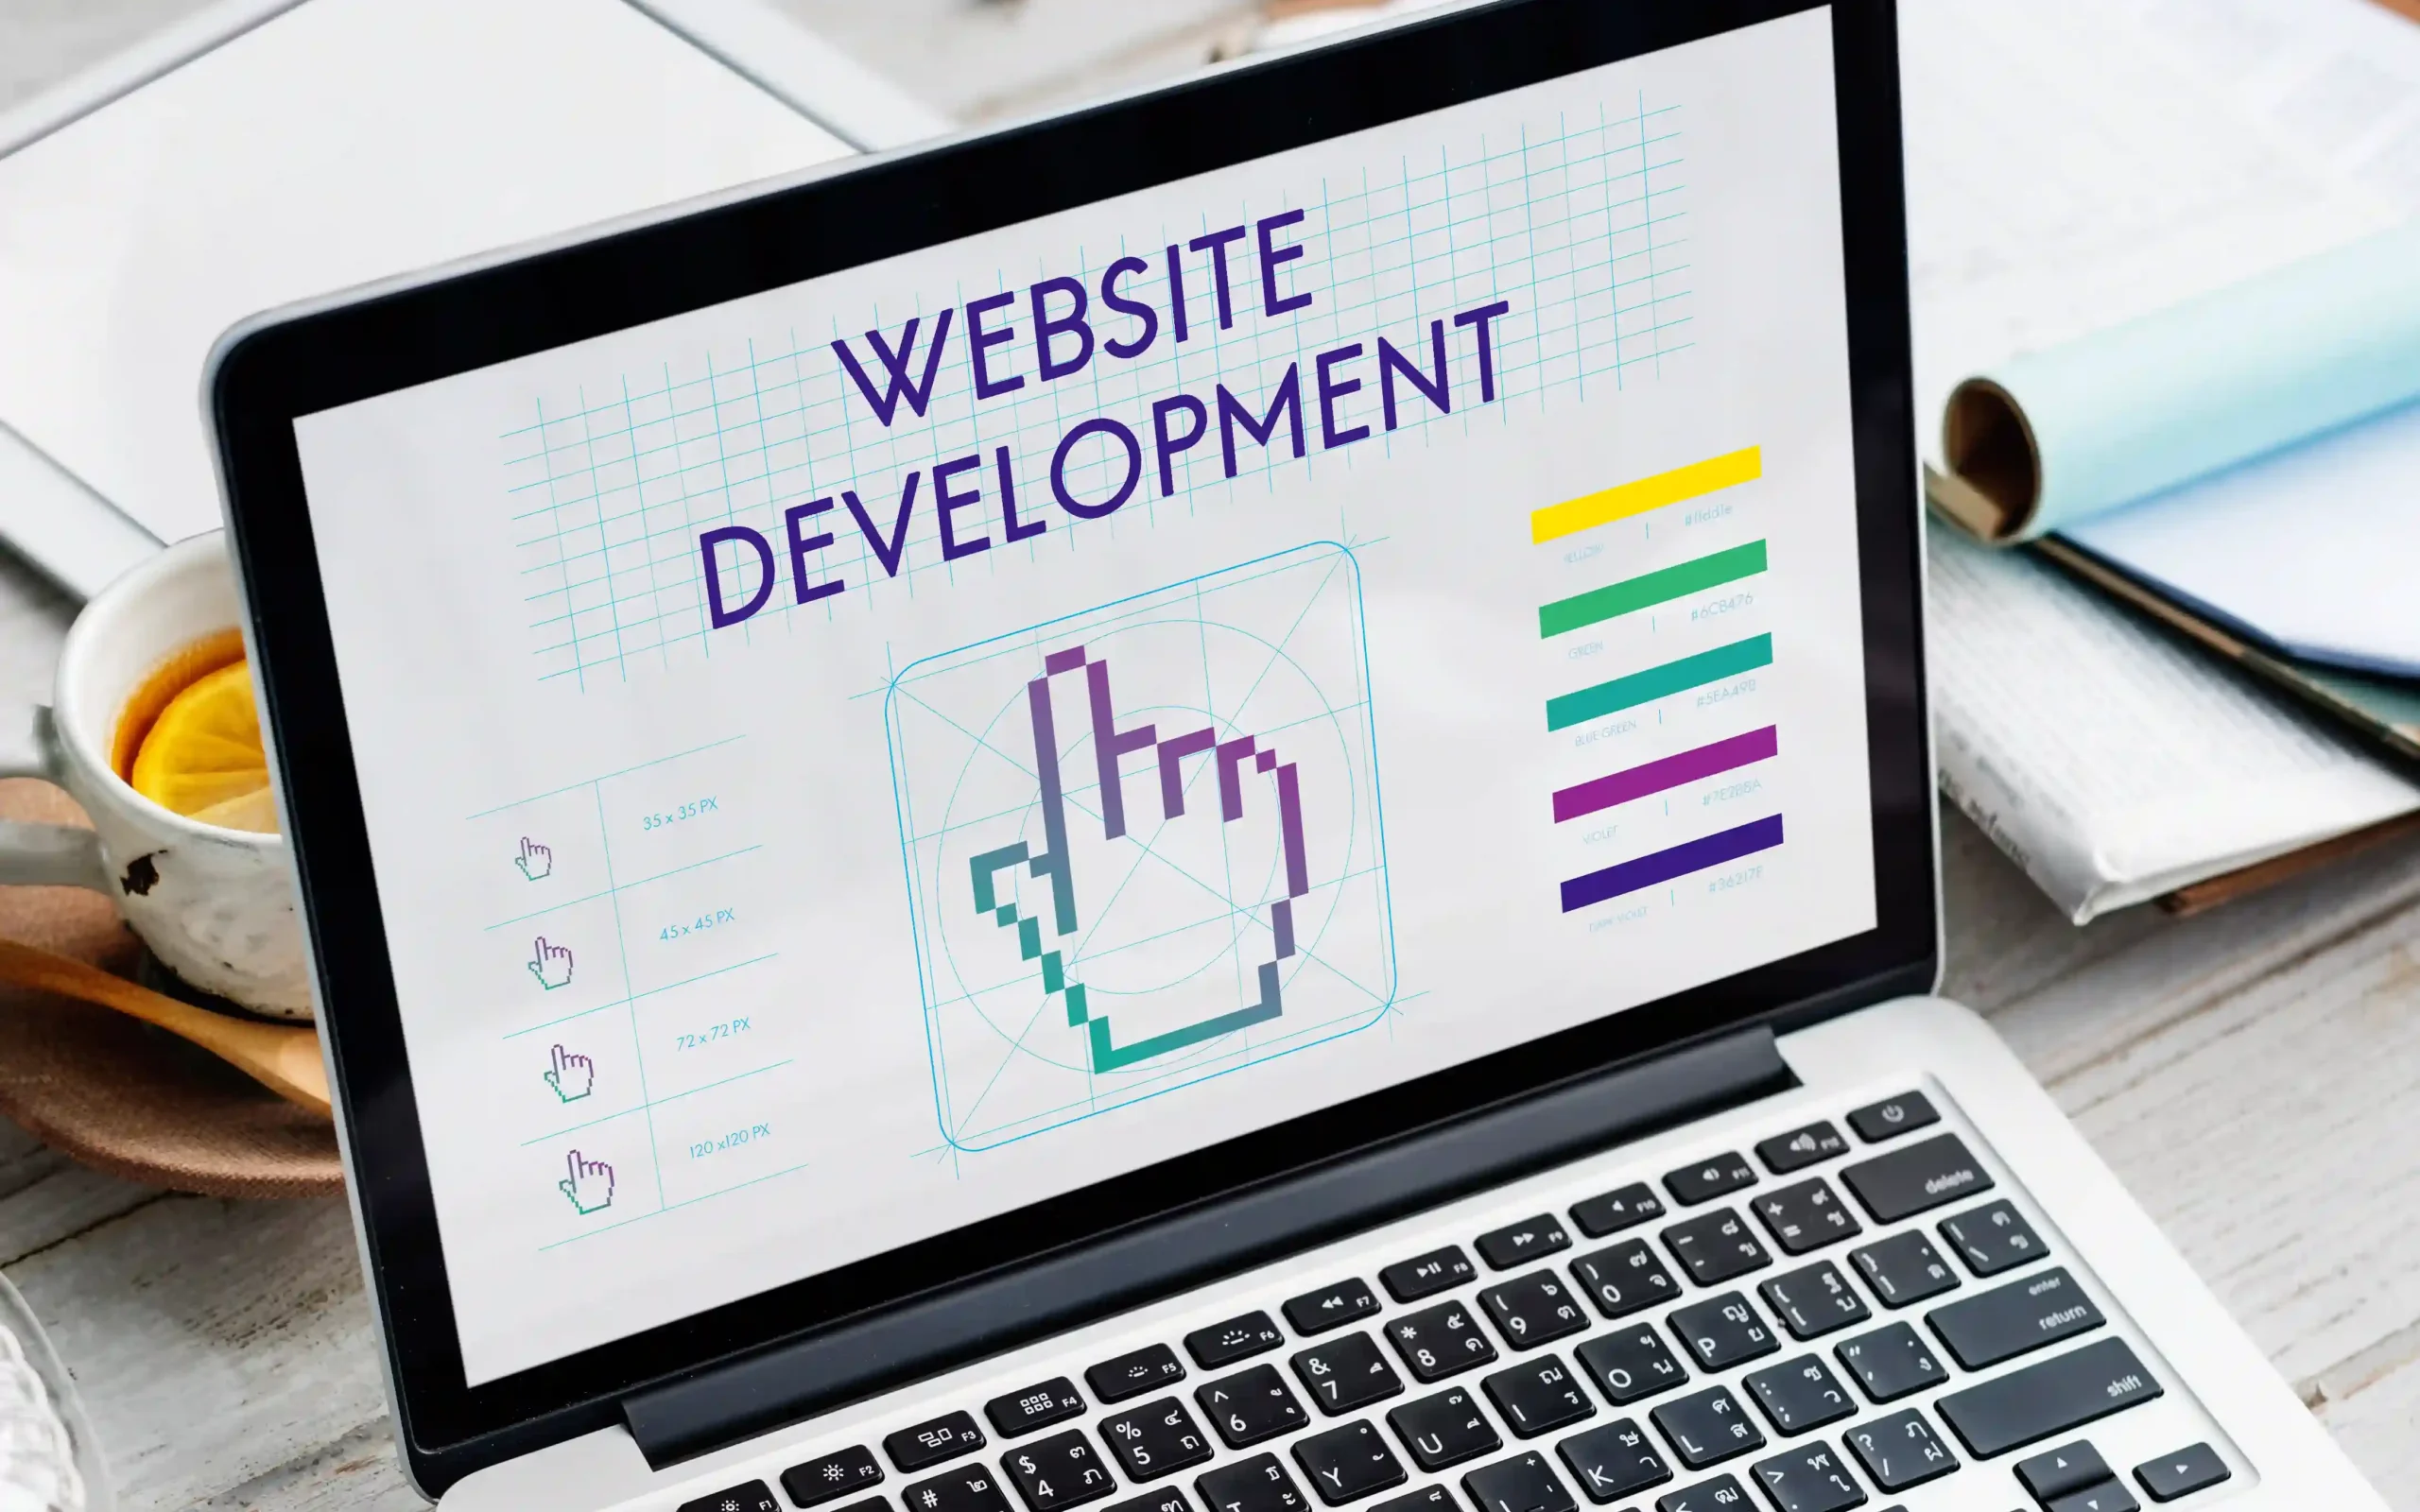 Wesoco Teknoloji, modern ve etkileyici web siteleri tasarlamak için uzmanlaşmıştır. Sizi diğerlerinden farklı kılacak bir web sitesine sahip olun.